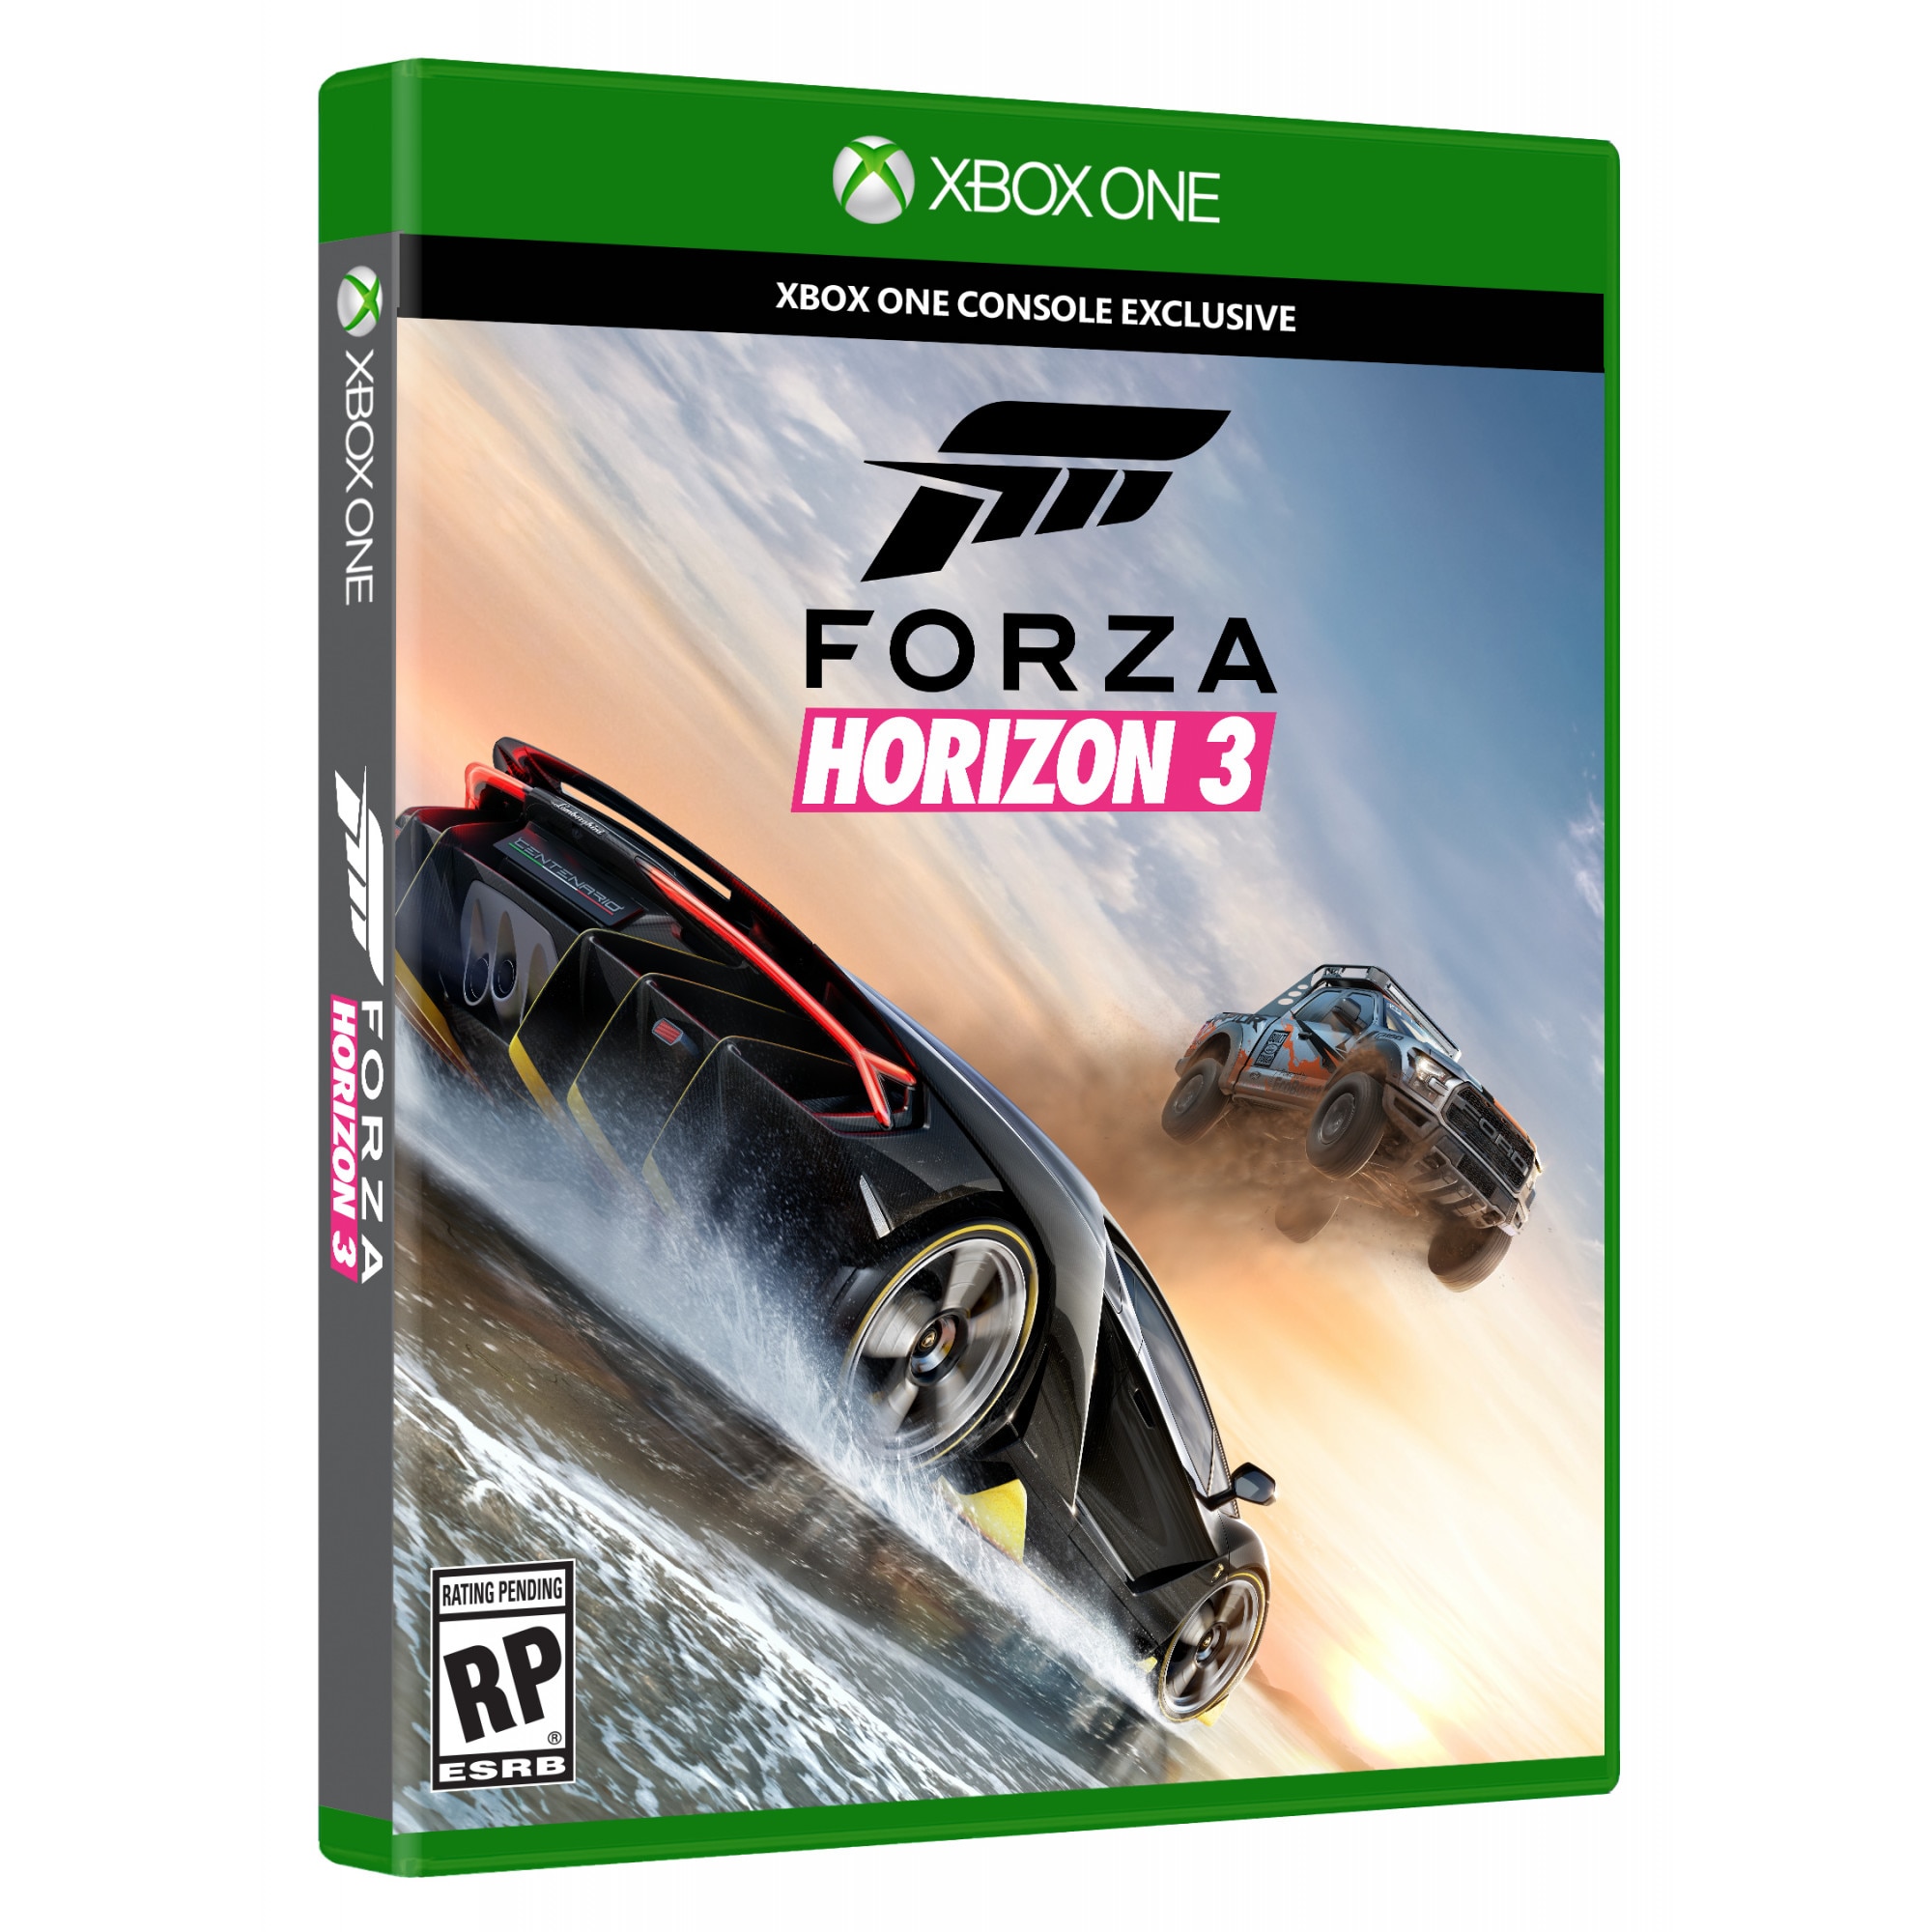 Forza Horizon 3 [Xbox one]. Forza Horizon 3 Xbox 360. Forza Horizon Xbox. Xbox one Forza Horizon 3 диск. Форза хбокс